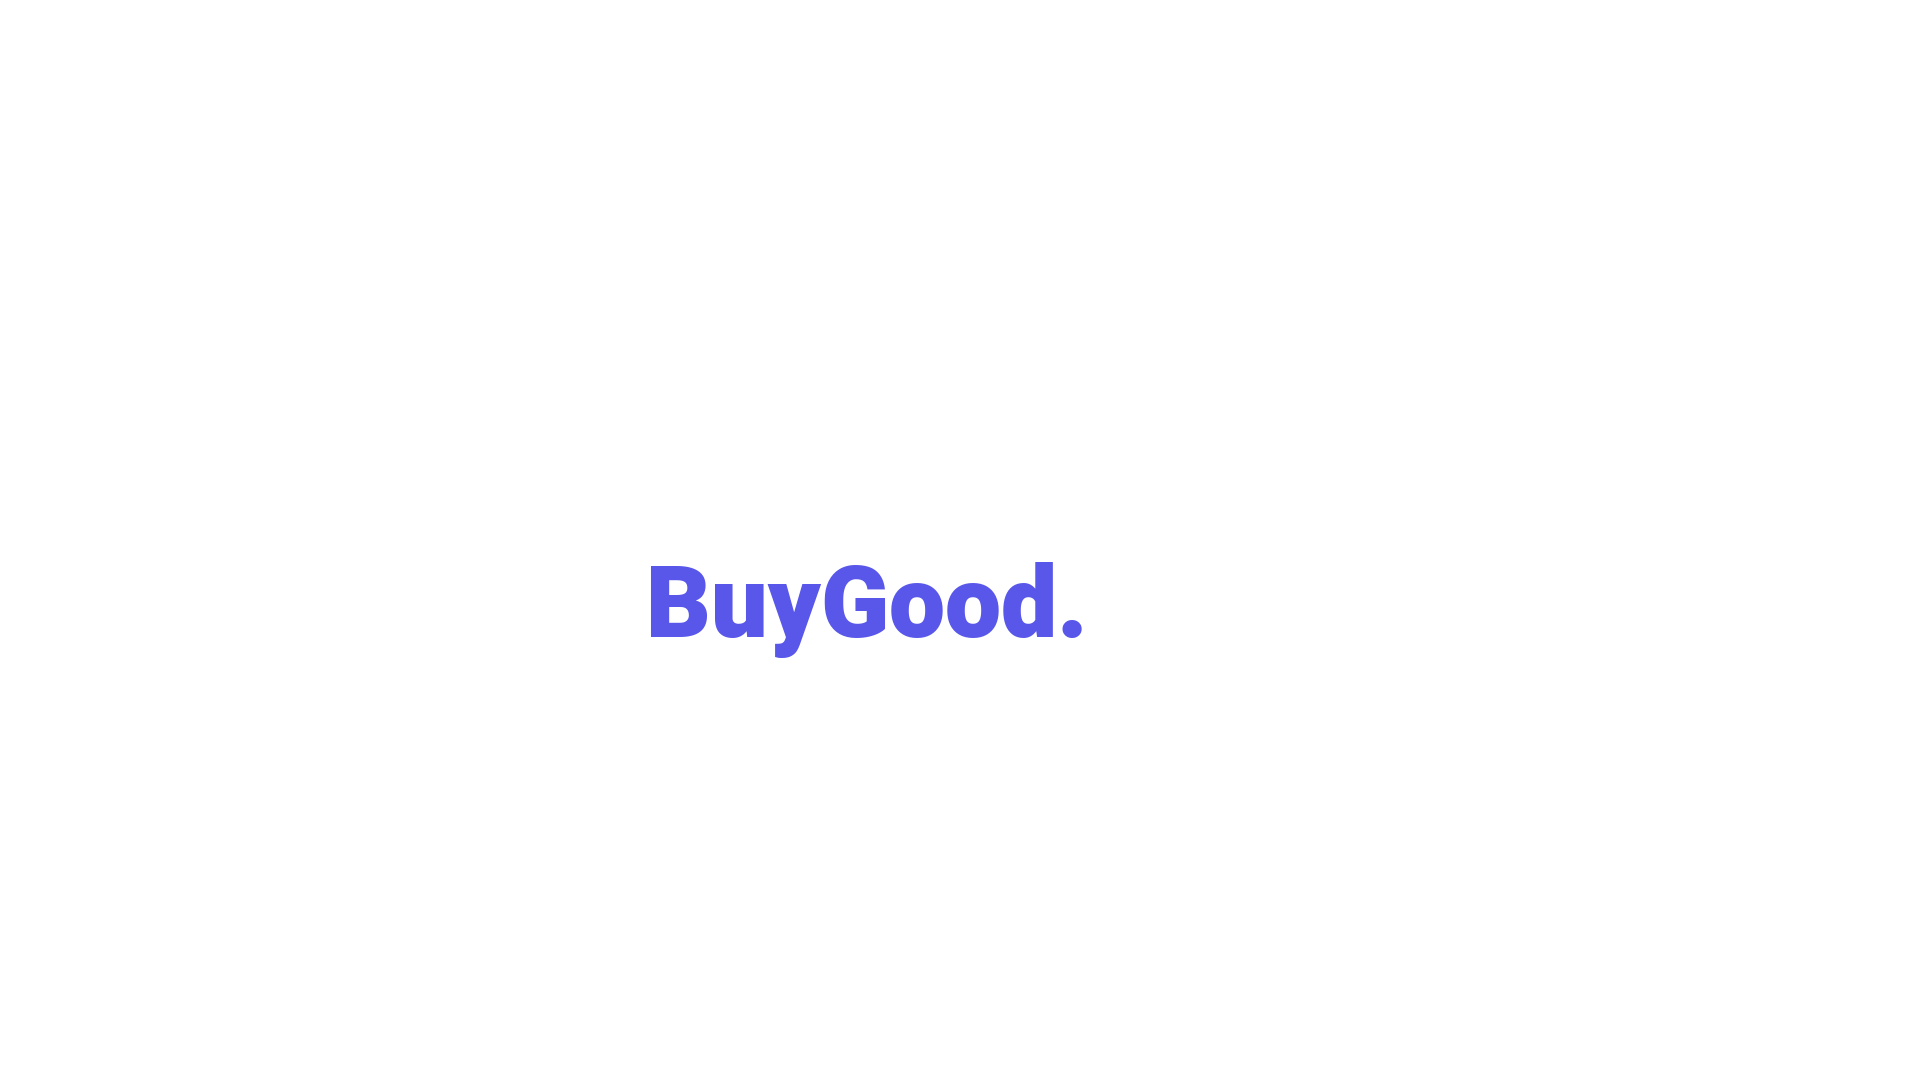 BuyGood